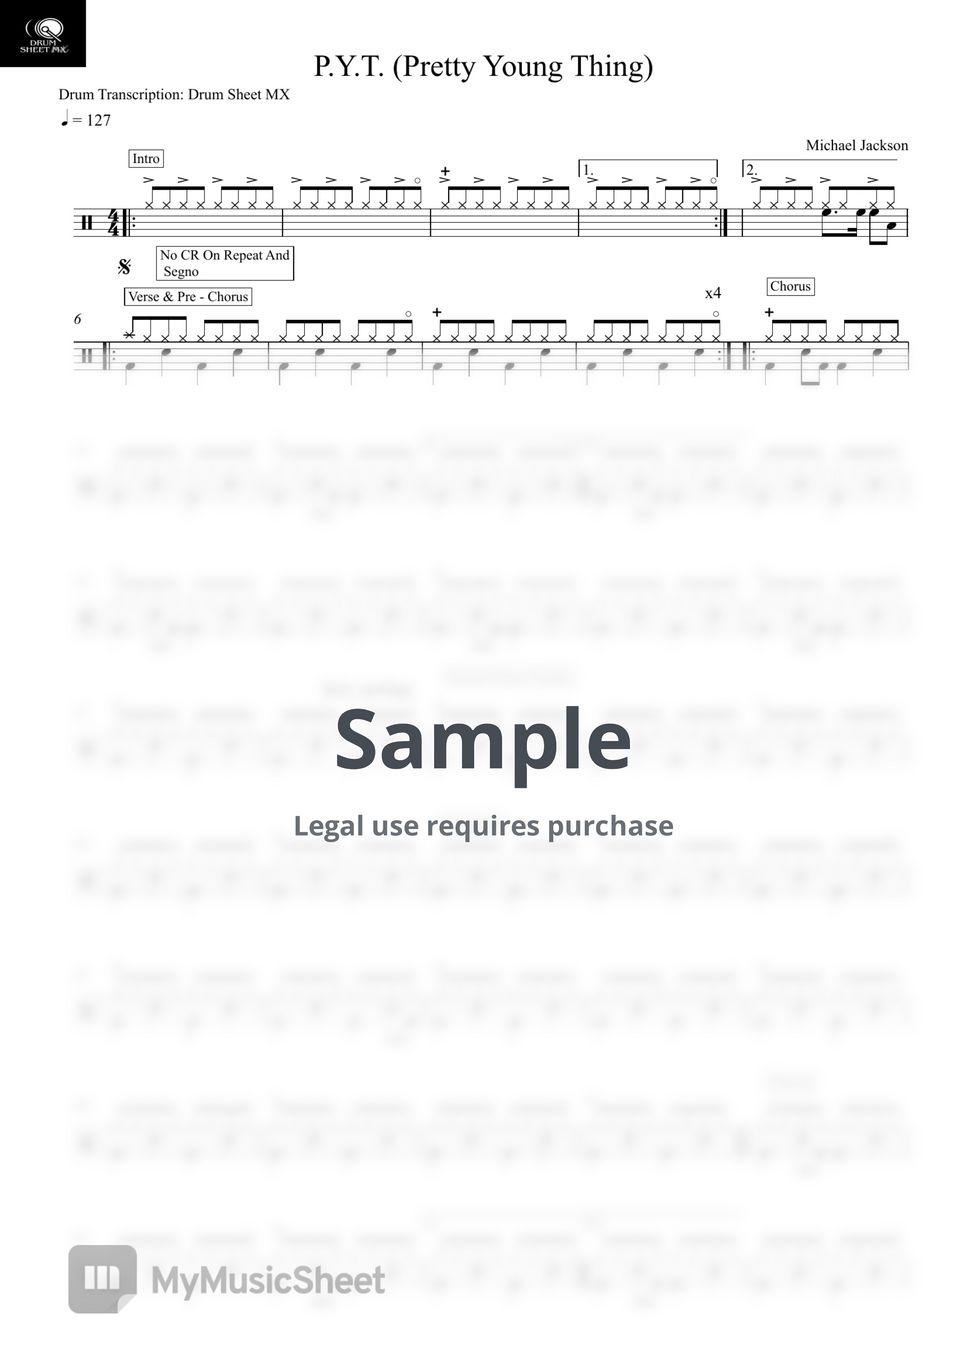 Drum Transcription: Drum Sheet MX - P.Y.T. by Drum Transcription: Drum Sheet MX